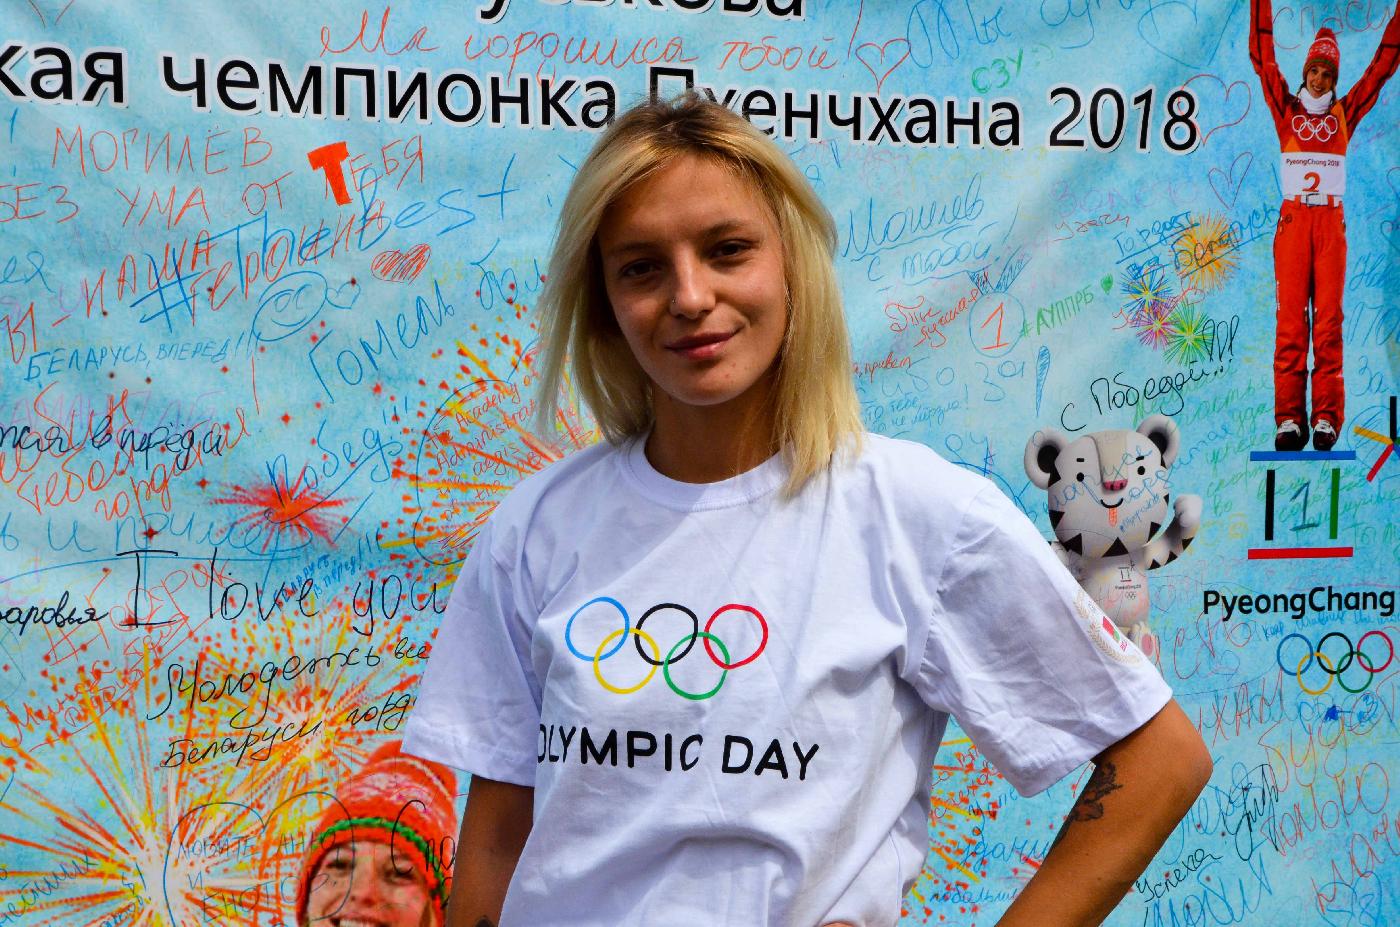 Пусть говорят! Белорусские спортсмены об Олимпийском дне